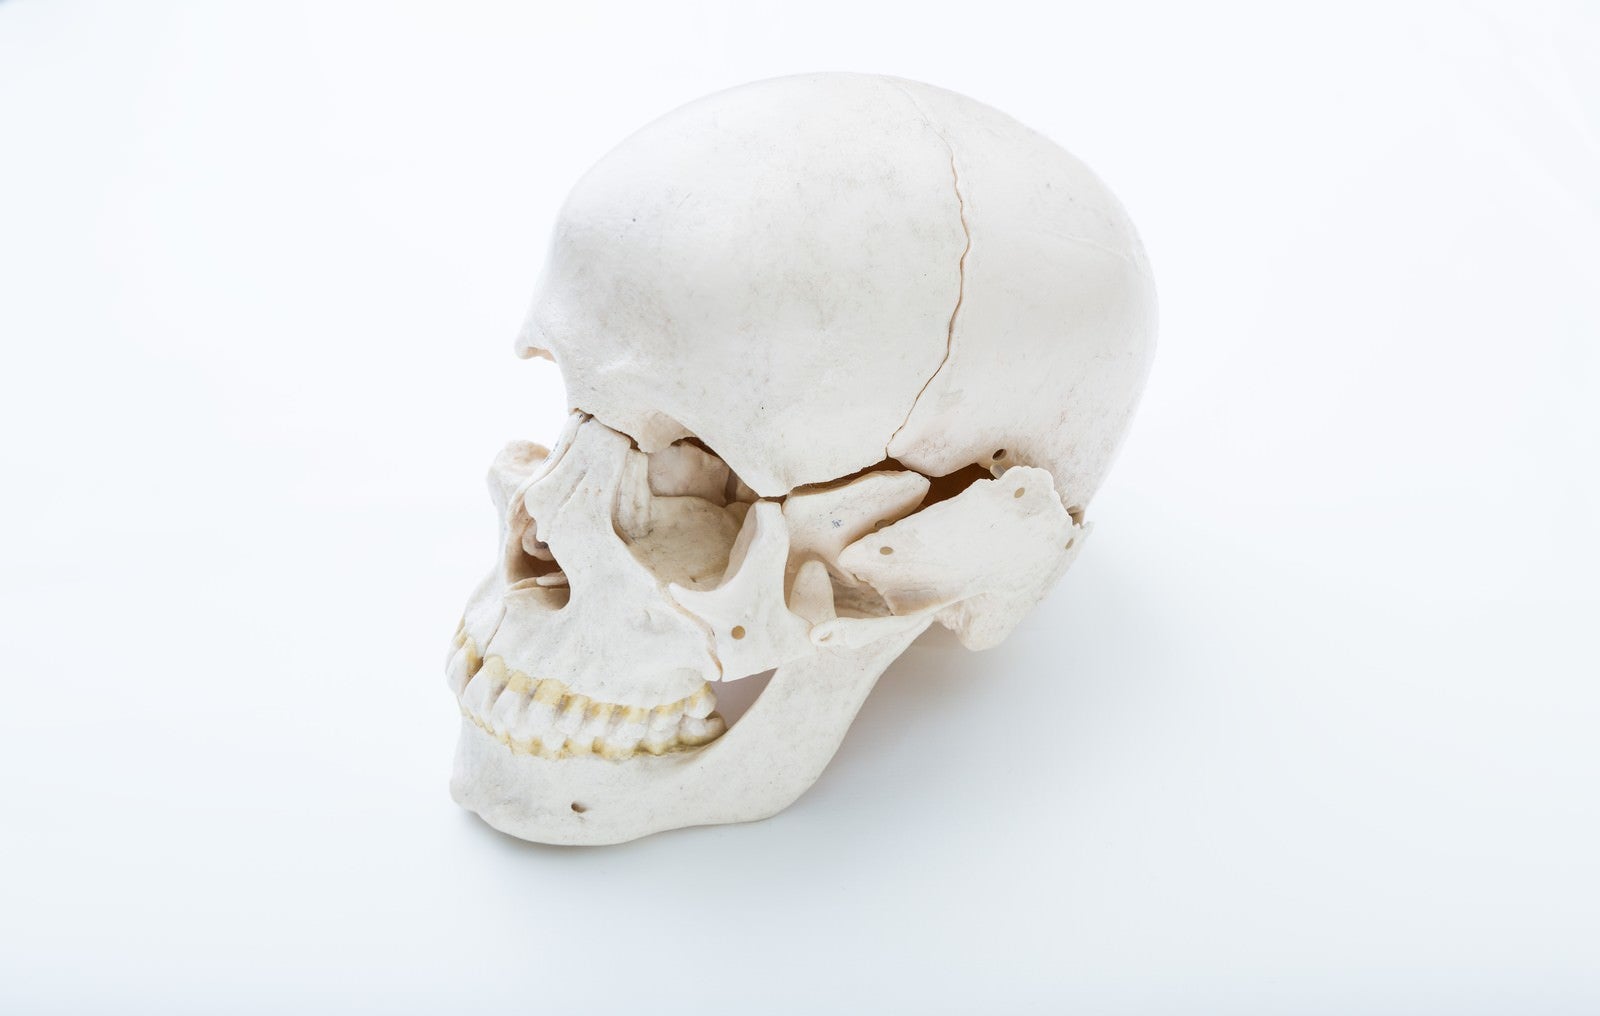 「頭蓋骨の模型」の写真